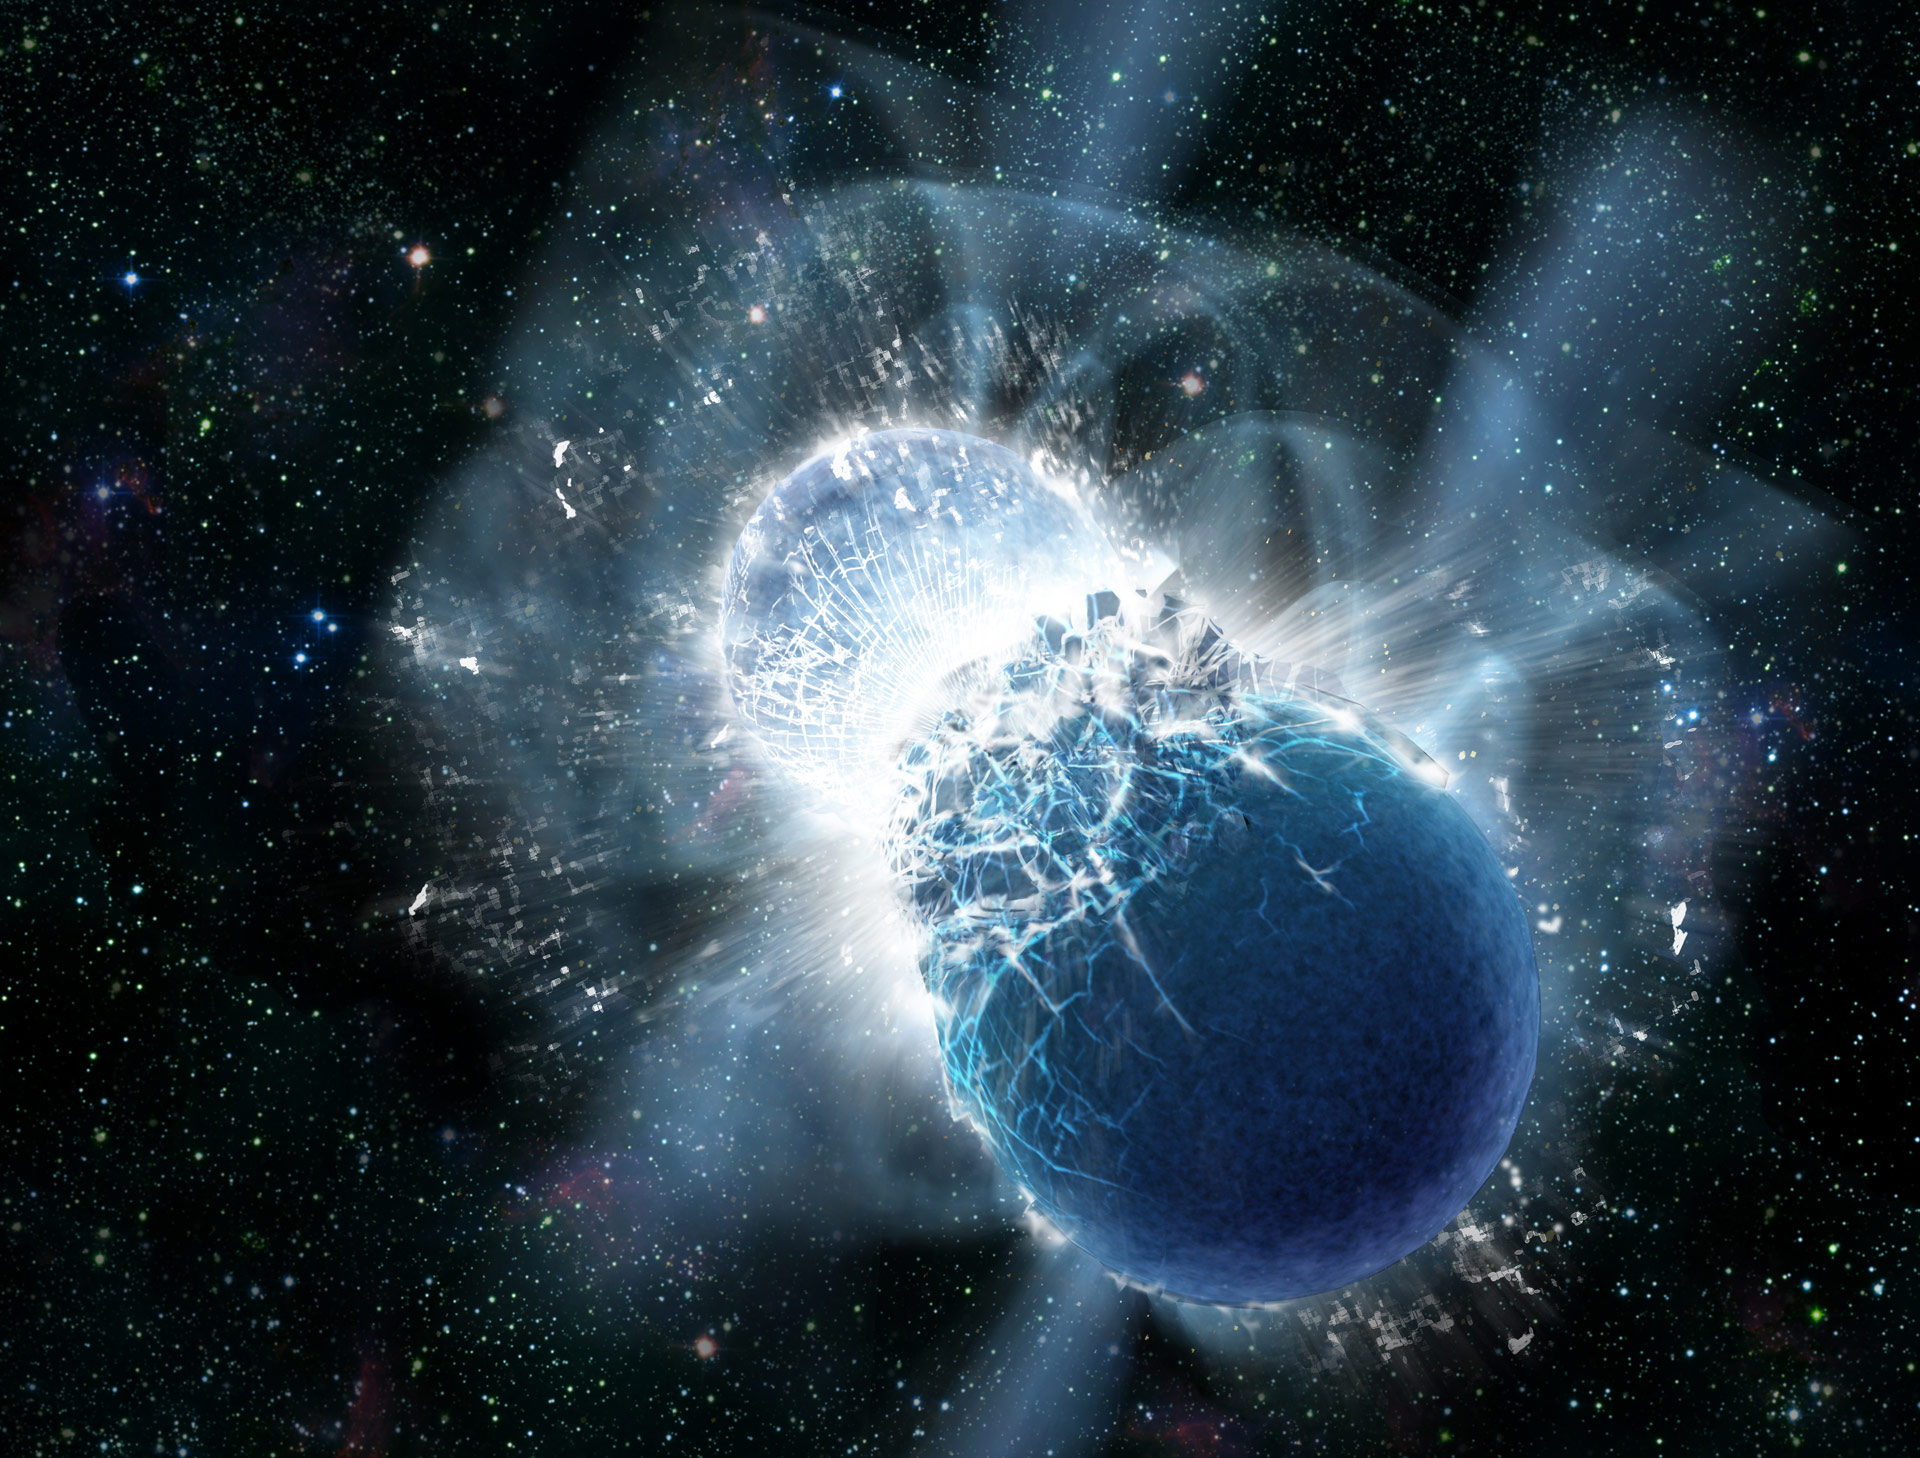 اكتشاف نوع جديد من المادة داخل النجوم النيوترونية - وجود مادة الكوارك في مركز أحد النجوم النيوترونية - الجمع بين فيزياء الجسيمات النظرية والفيزياء النووية 